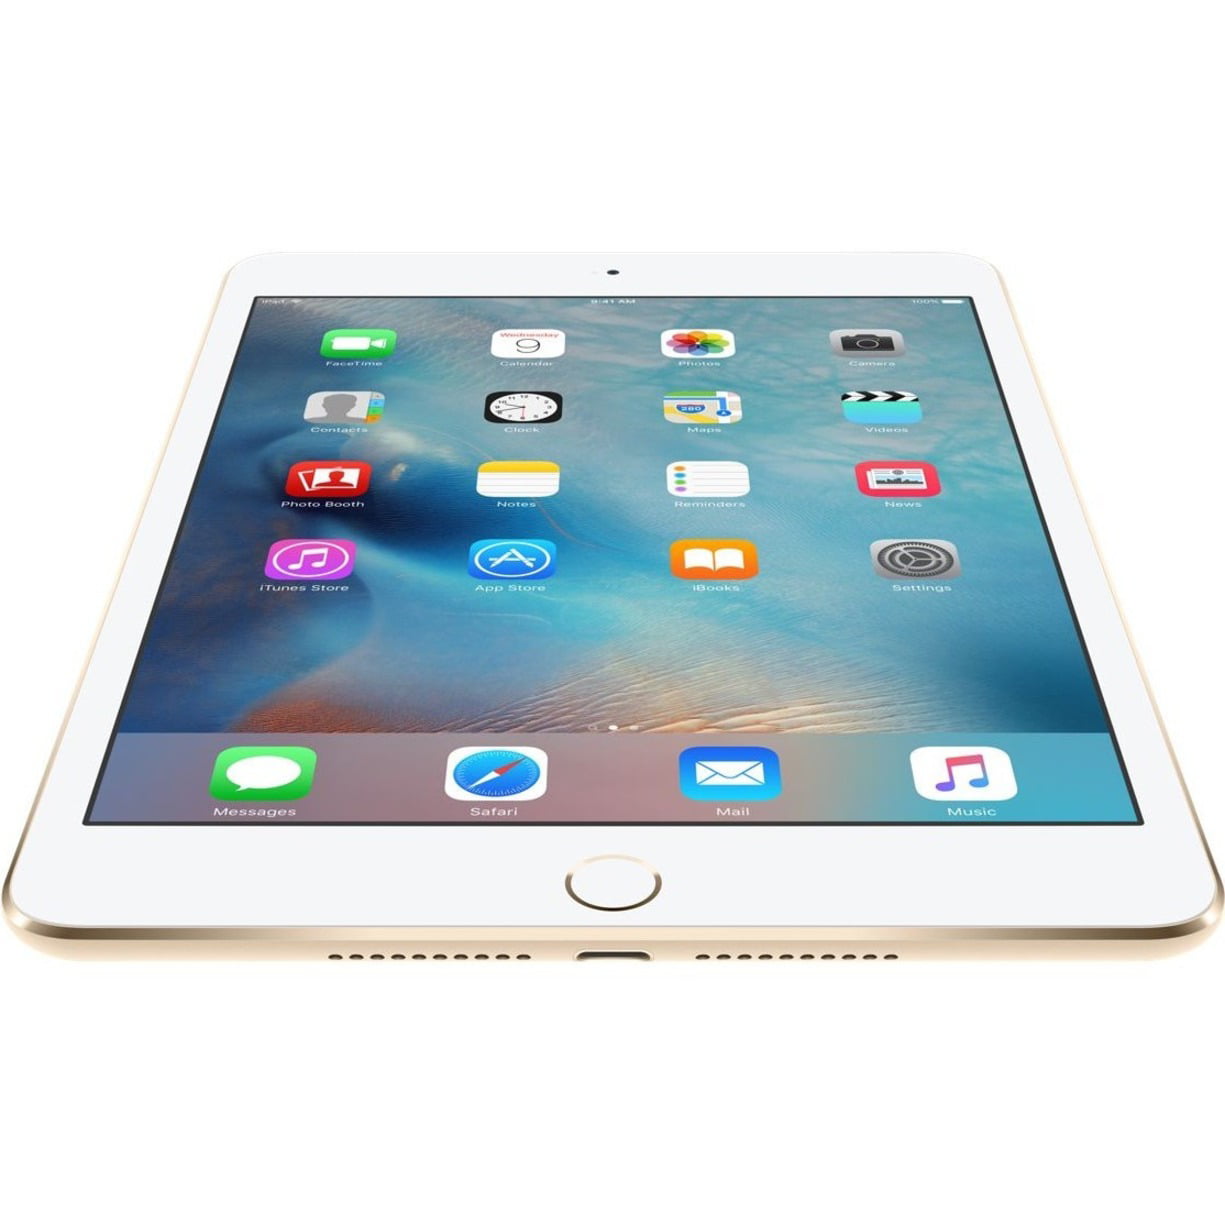 Apple iPad mini 4 Tablet, 7.9